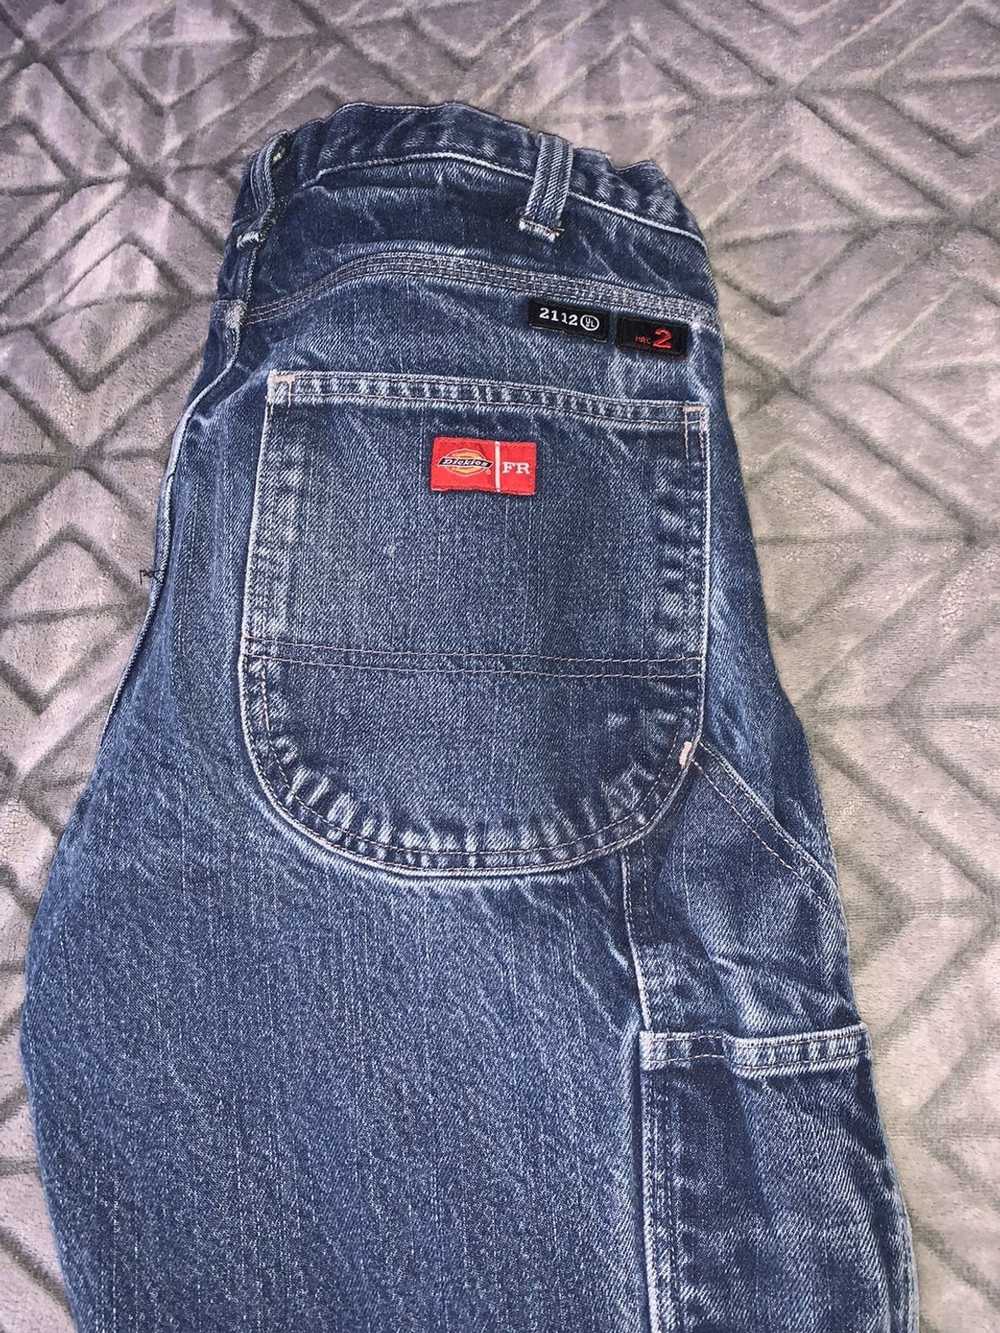 Dickies Vintage dickie carpenter jeans - image 4